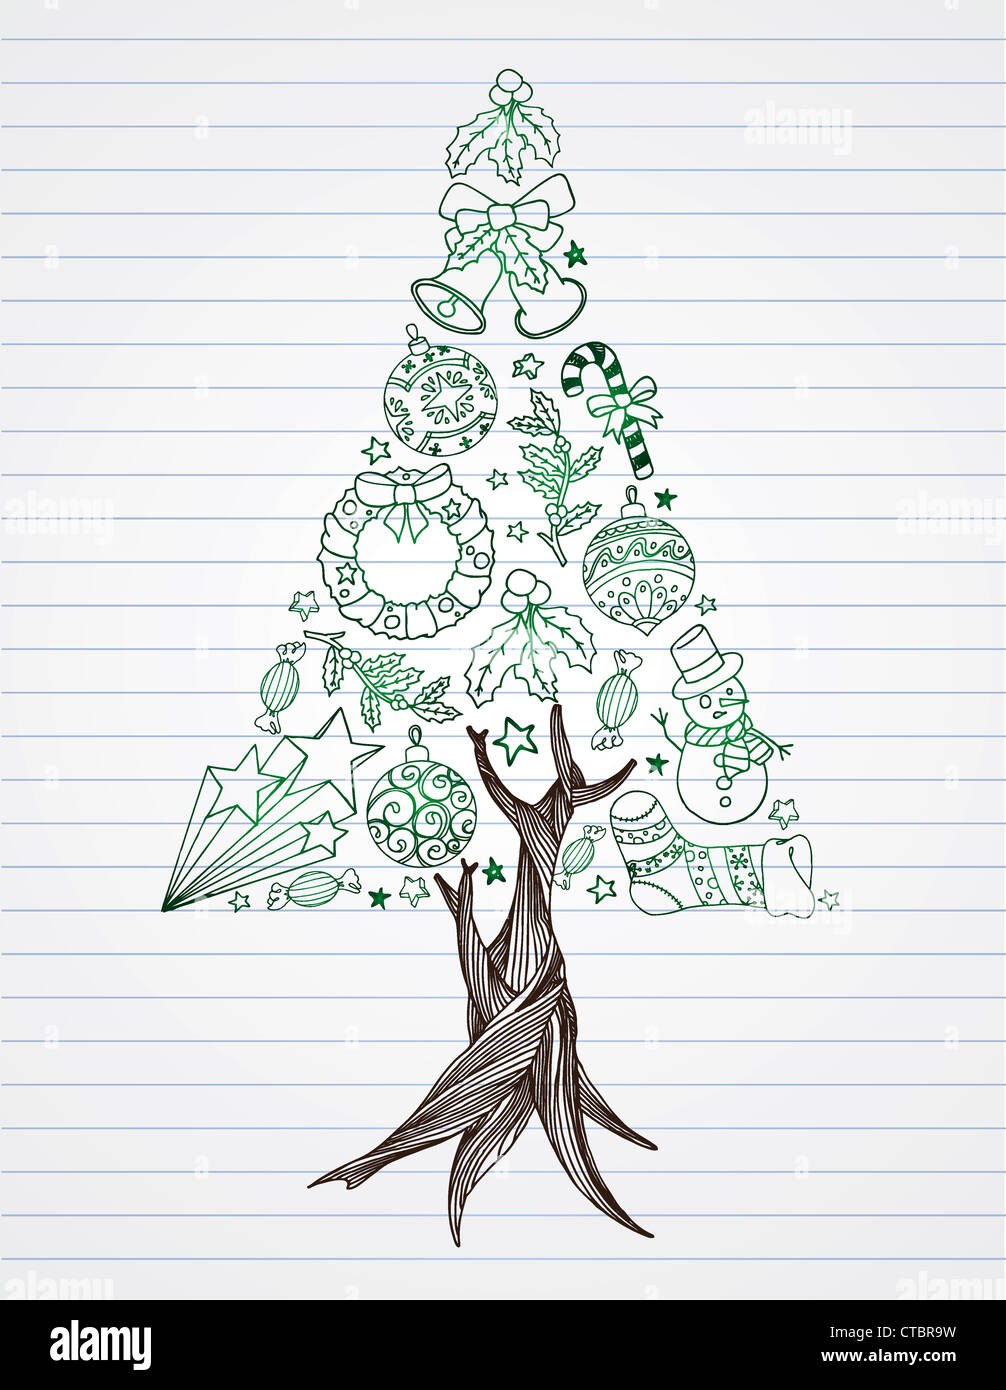 Kiefer Baum Weihnachten Kritzeleien auf Liniertes Papier aus. Stockfoto